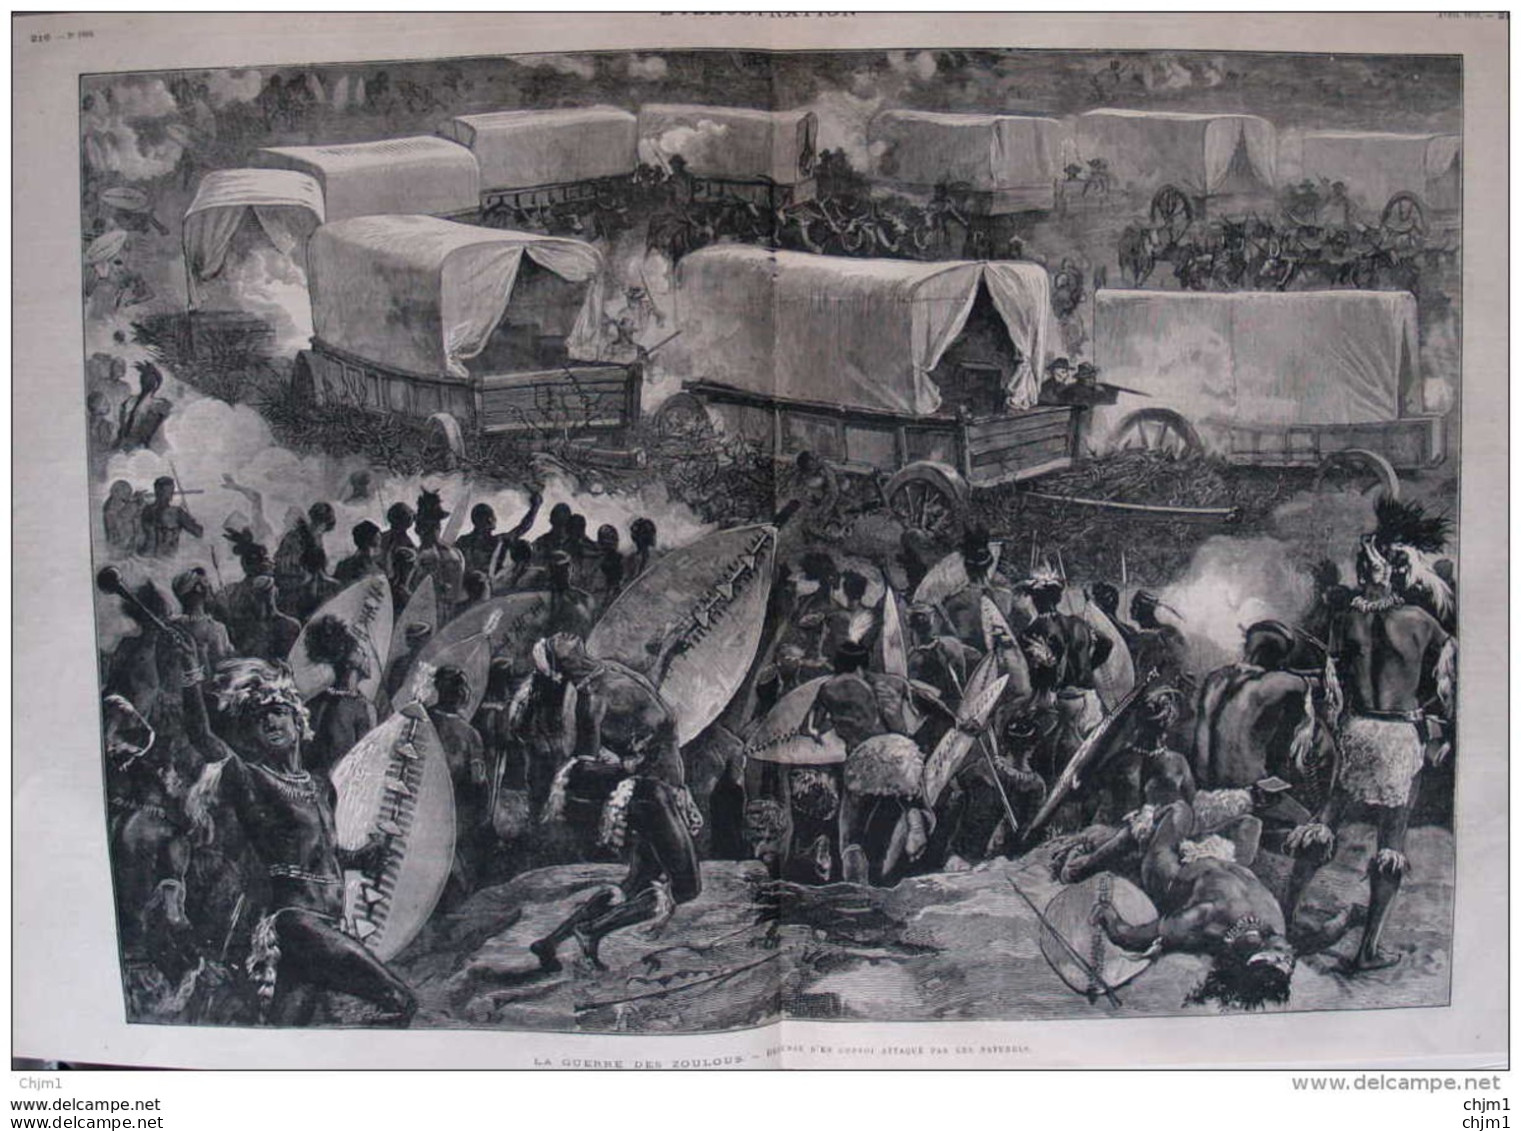 La Guerre Des Zoulous - Défense D'un Convoi Attaqué Par Les Naturels - Page Double Original 1879 - Documentos Históricos